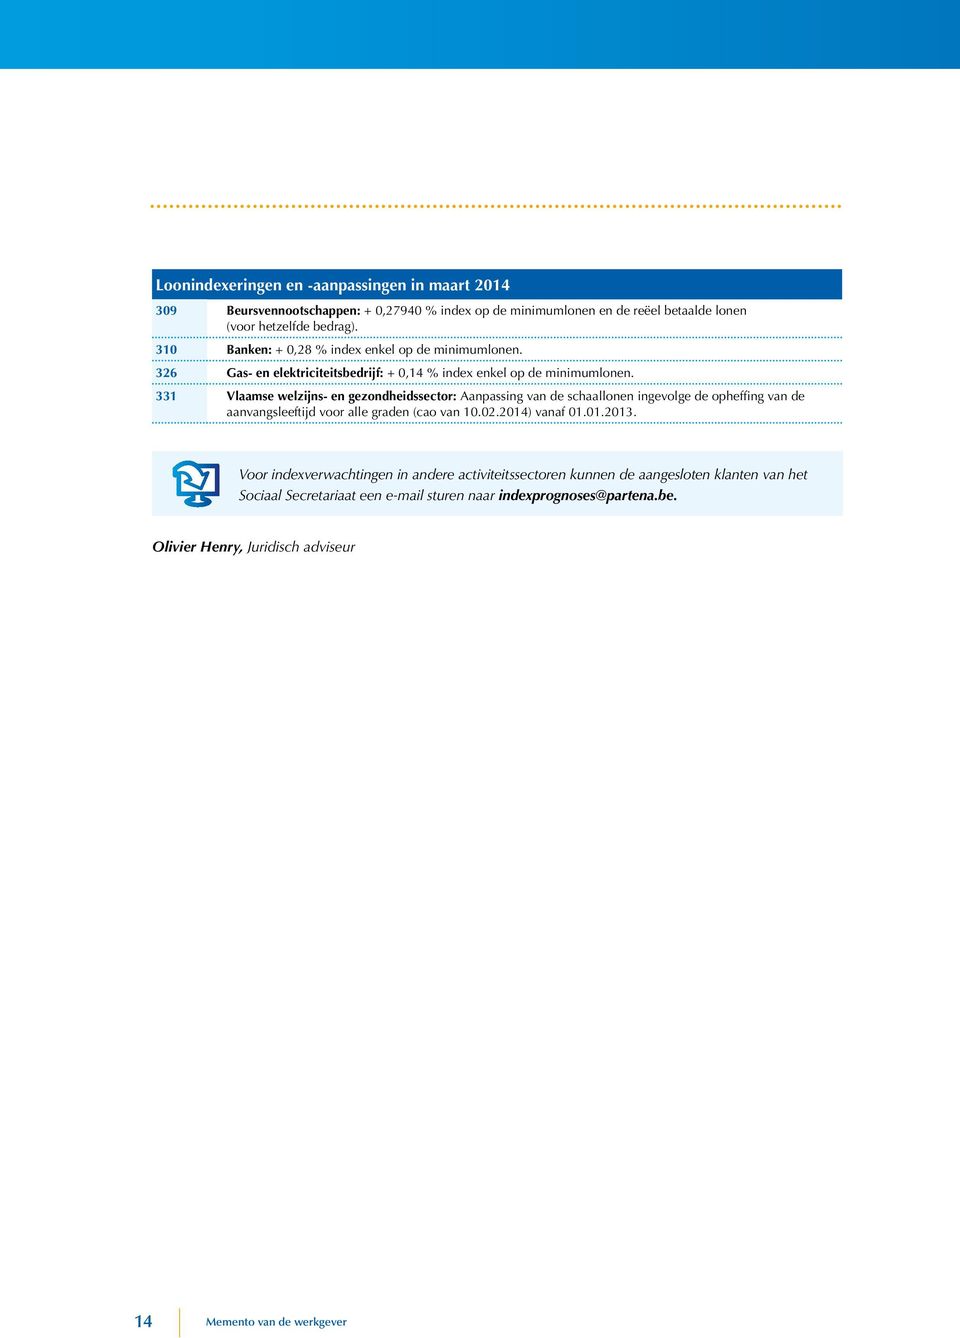 331 Vlaamse welzijns- en gezondheidssector: Aanpassing van de schaallonen ingevolge de opheffing van de aanvangsleeftijd voor alle graden (cao van 10.02.2014) vanaf 01.01.2013.